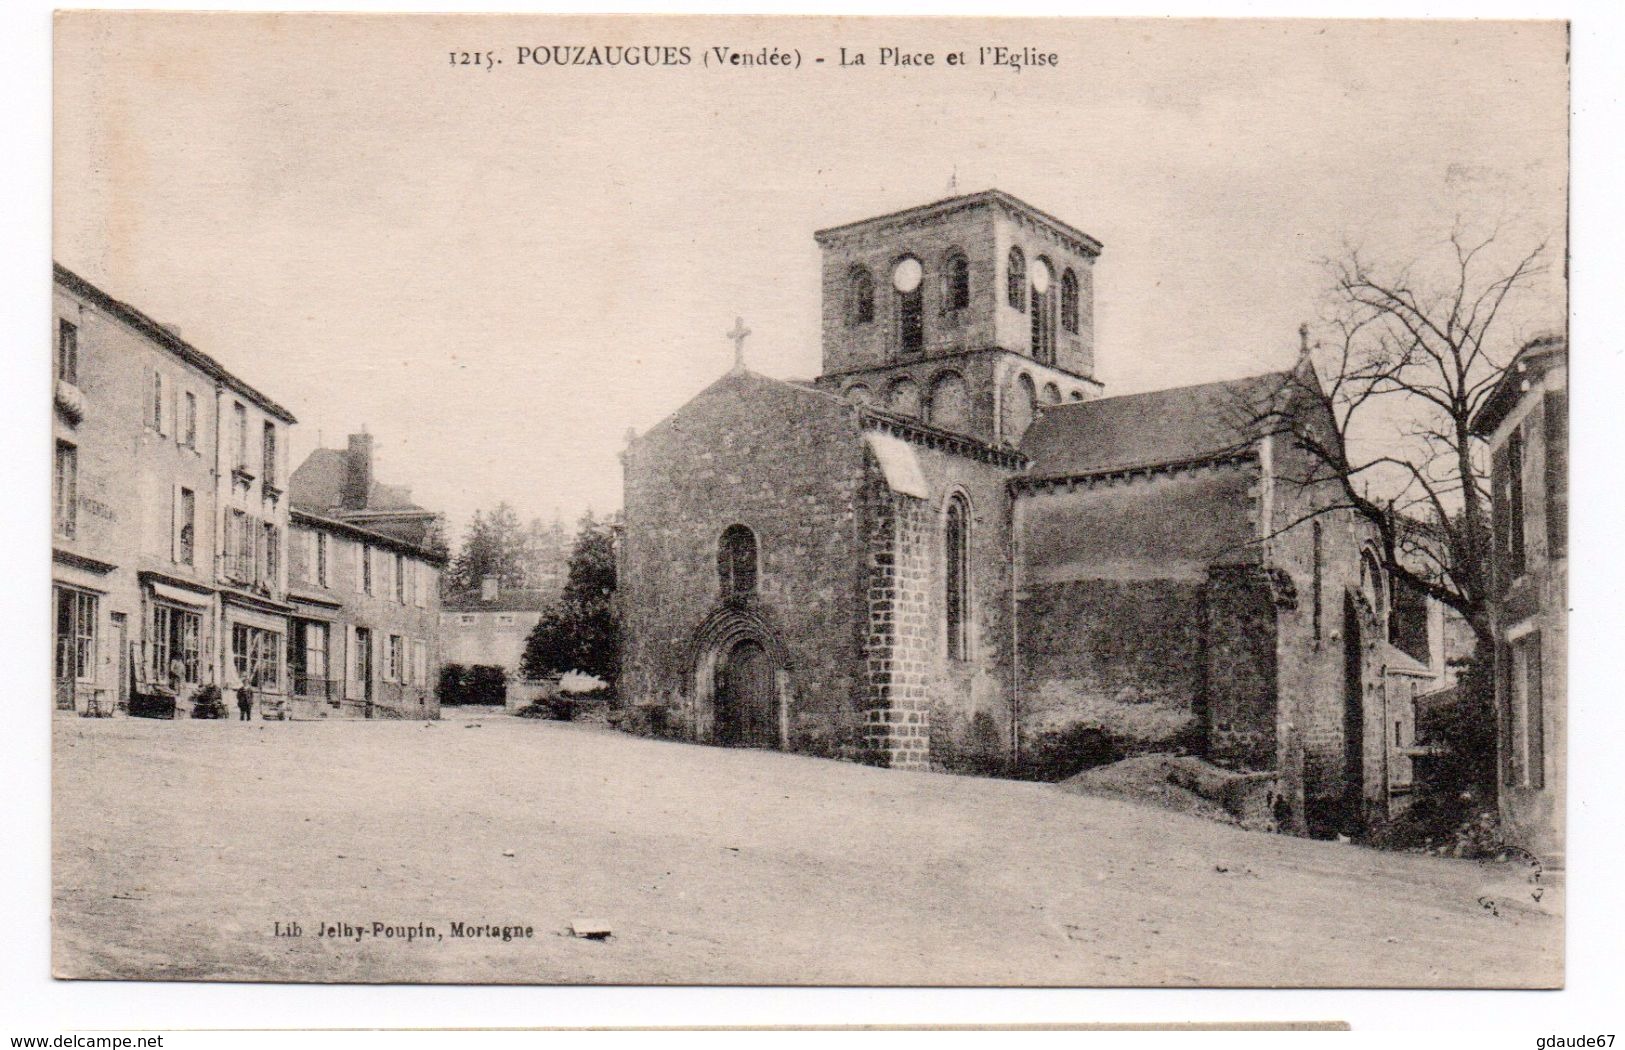 PAUZAUGUES (85) - LA PLACE DE L'EGLISE - Pouzauges